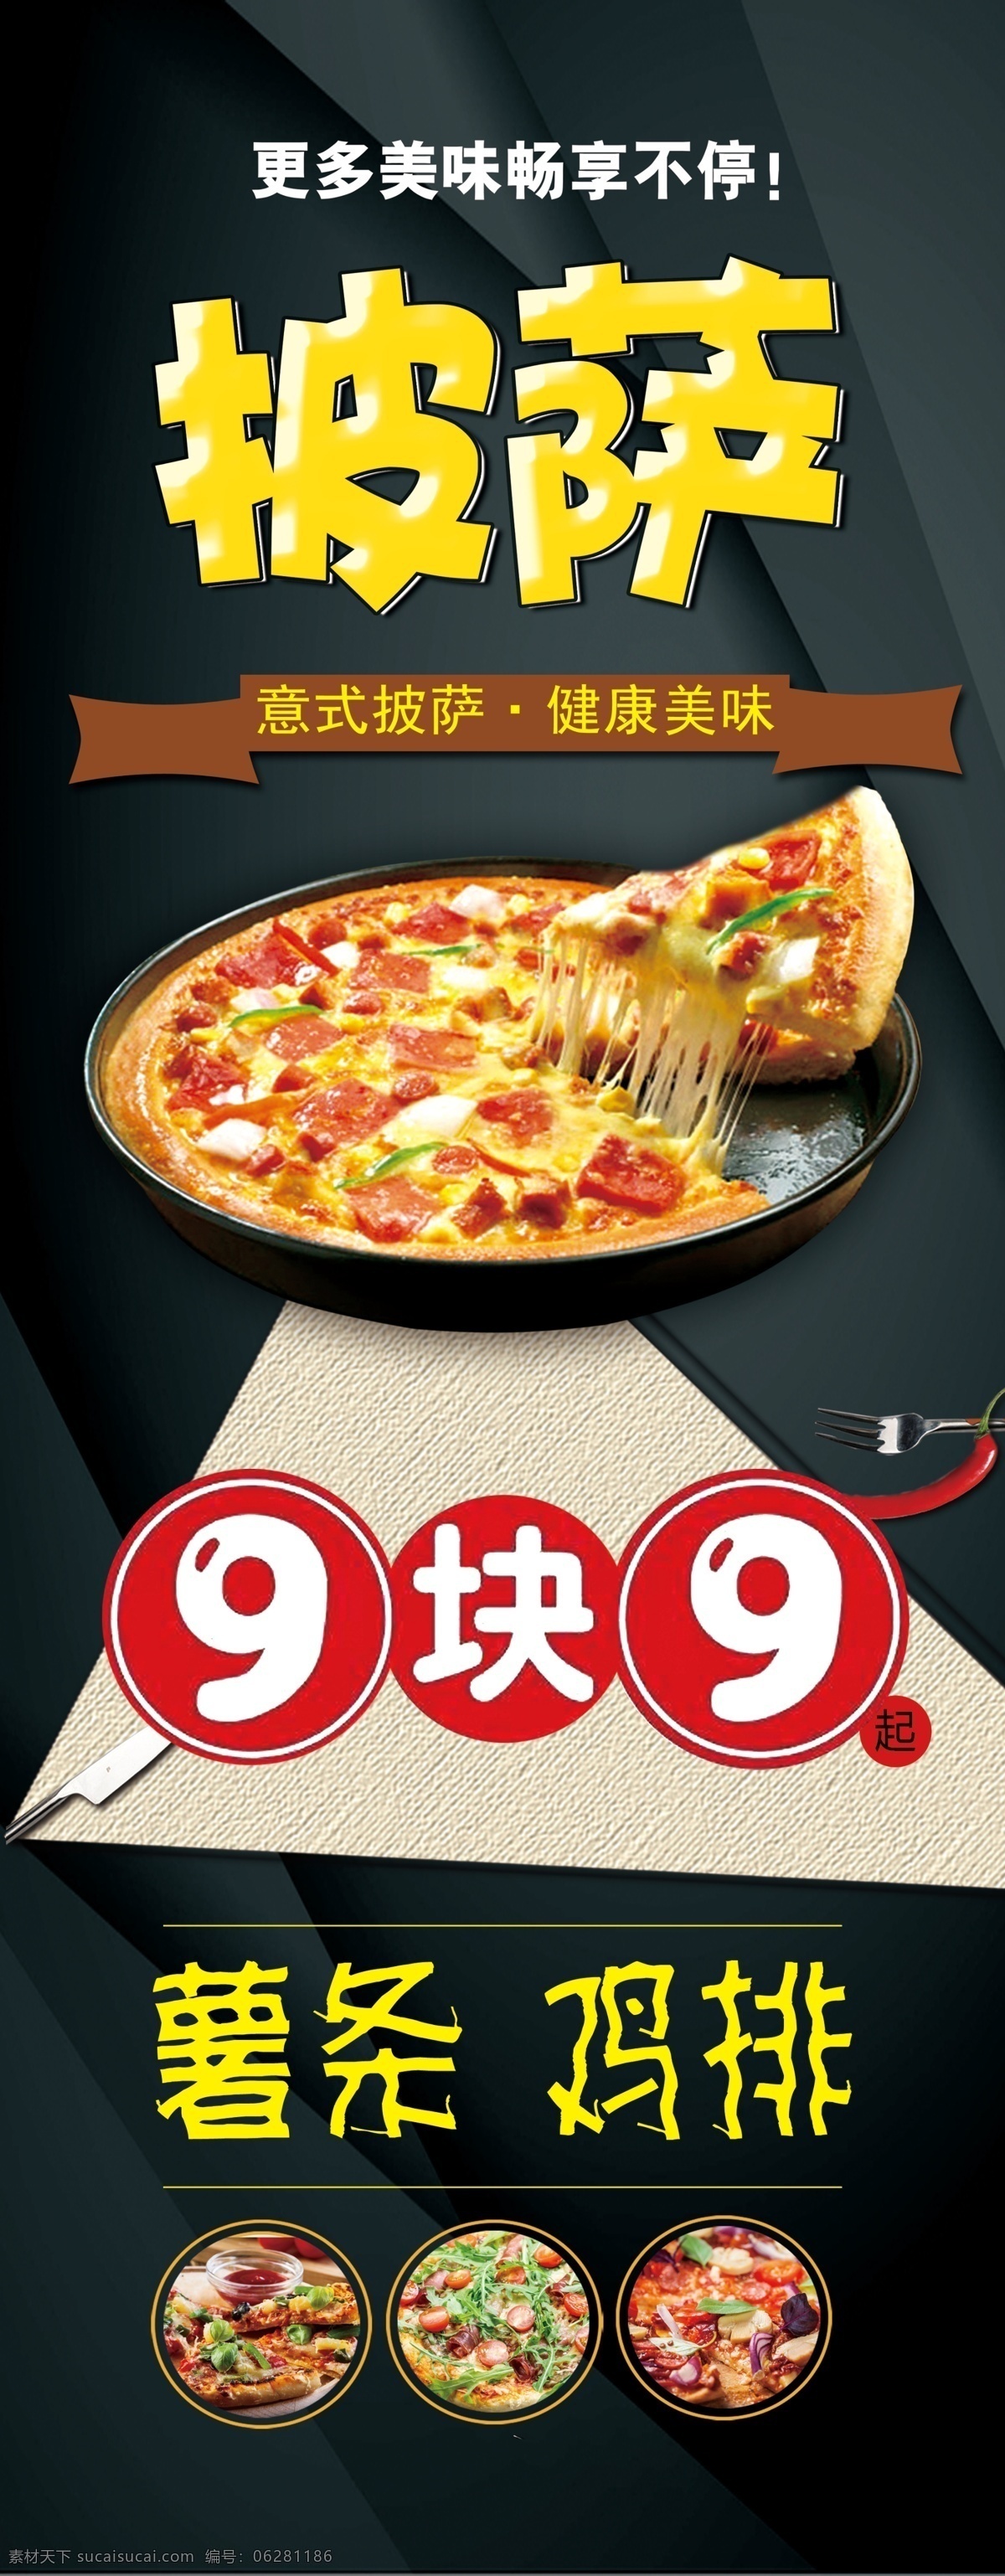 披萨啊图片 披萨 薯条 鸡排 9块9 寿司